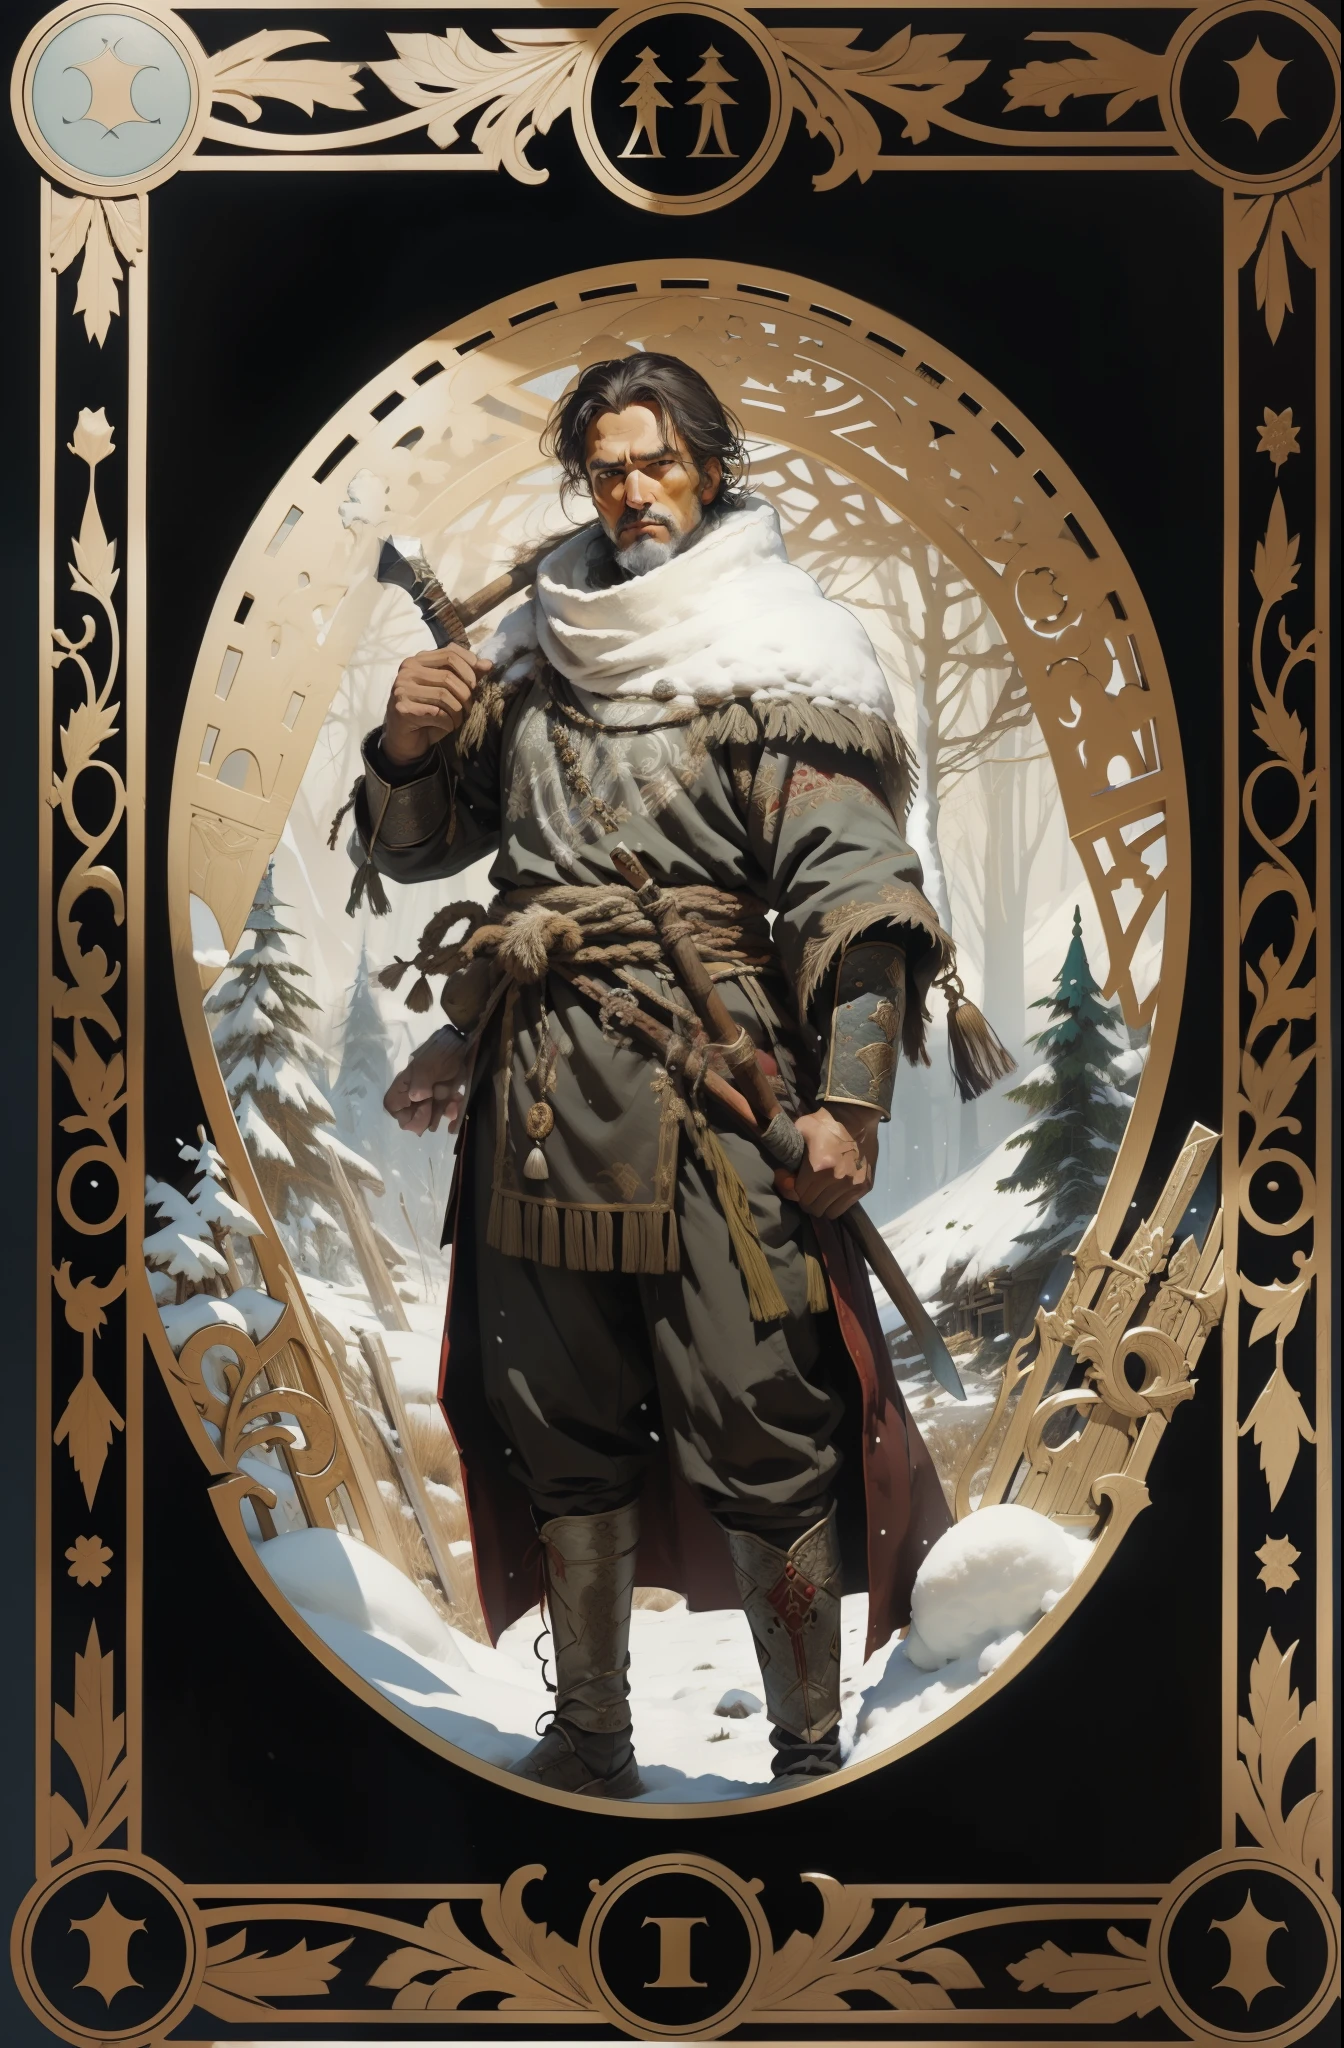 Homem, em roupas tradicionais dos povos do Norte, com um machado nas mãos, fundo de floresta de neve, estilo tarô, quadro estampado medieval